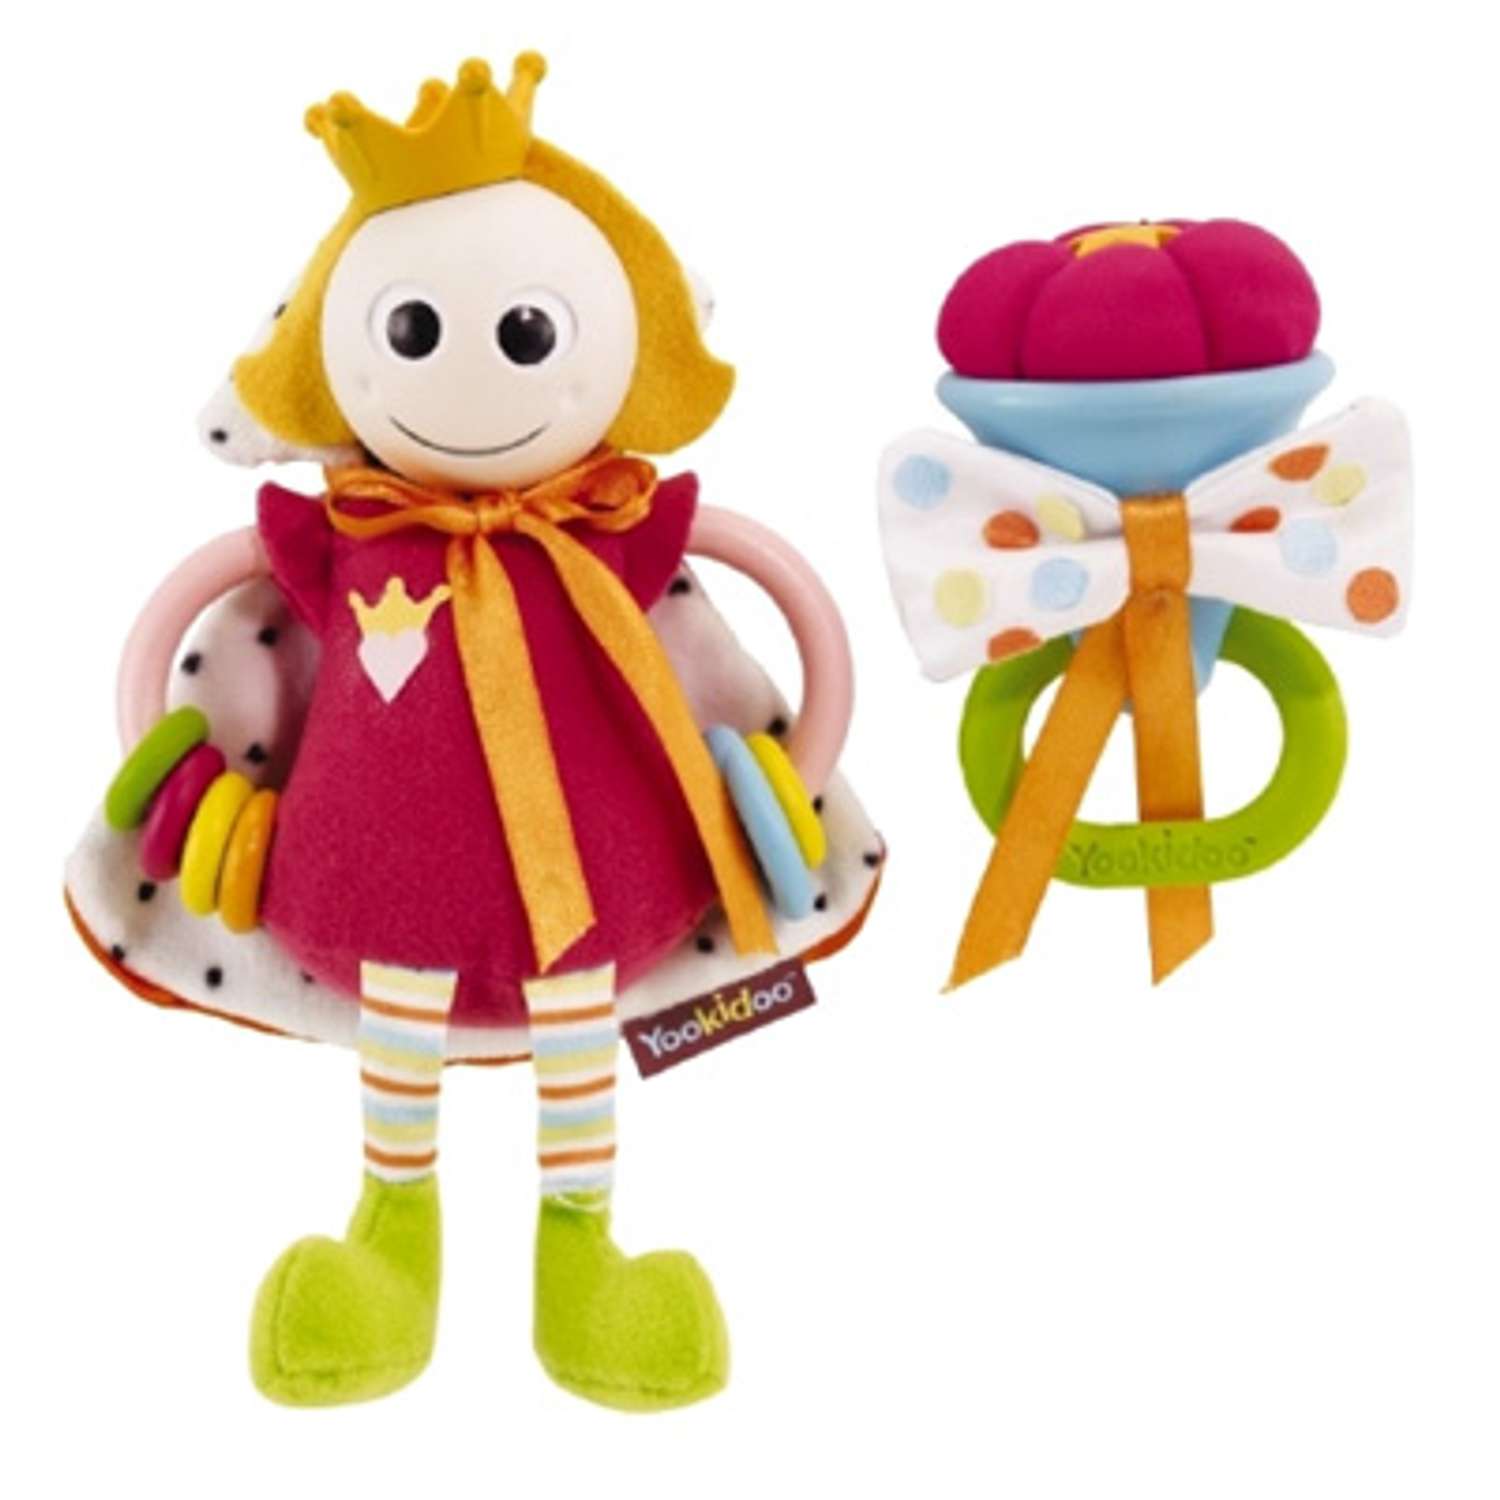 Развивающая игрушка Yookidoo Принц-Принцесса в ассортименте - фото 1